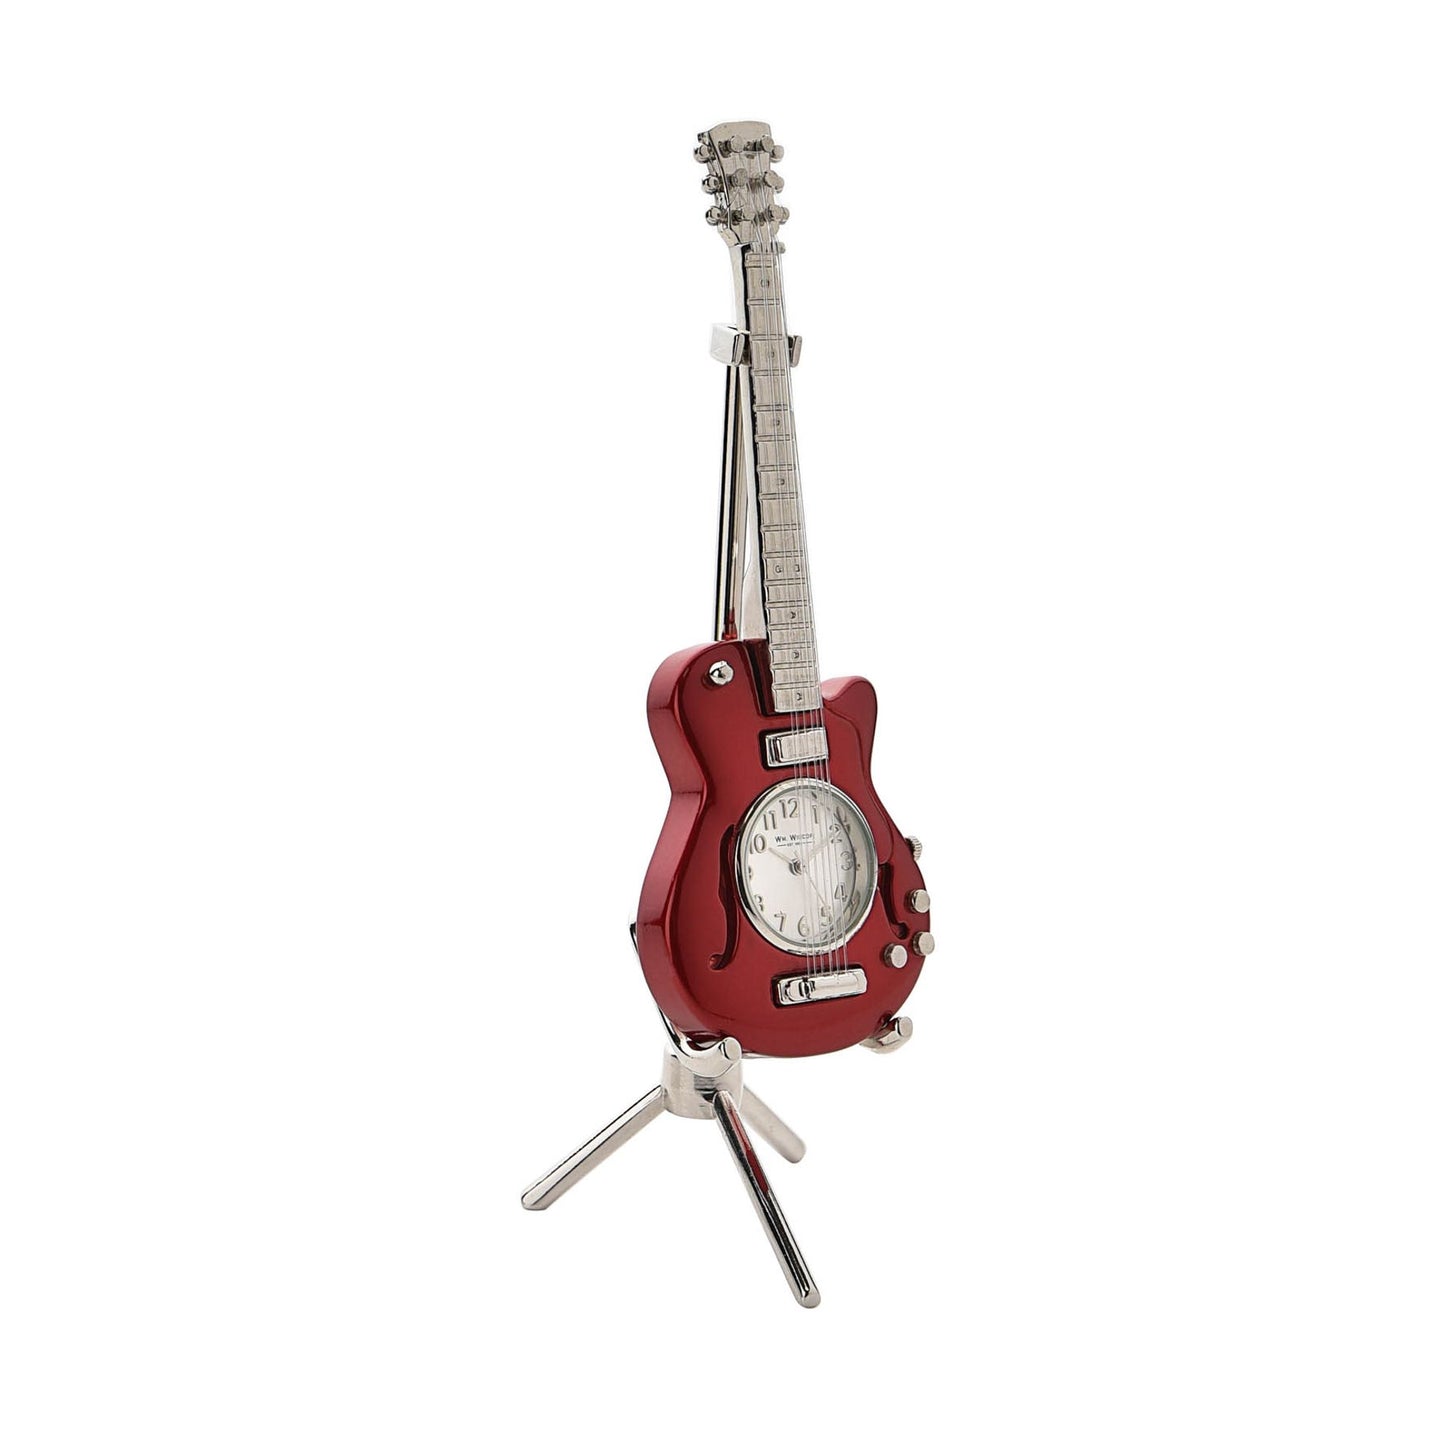 Miniature Red Guitar Clock